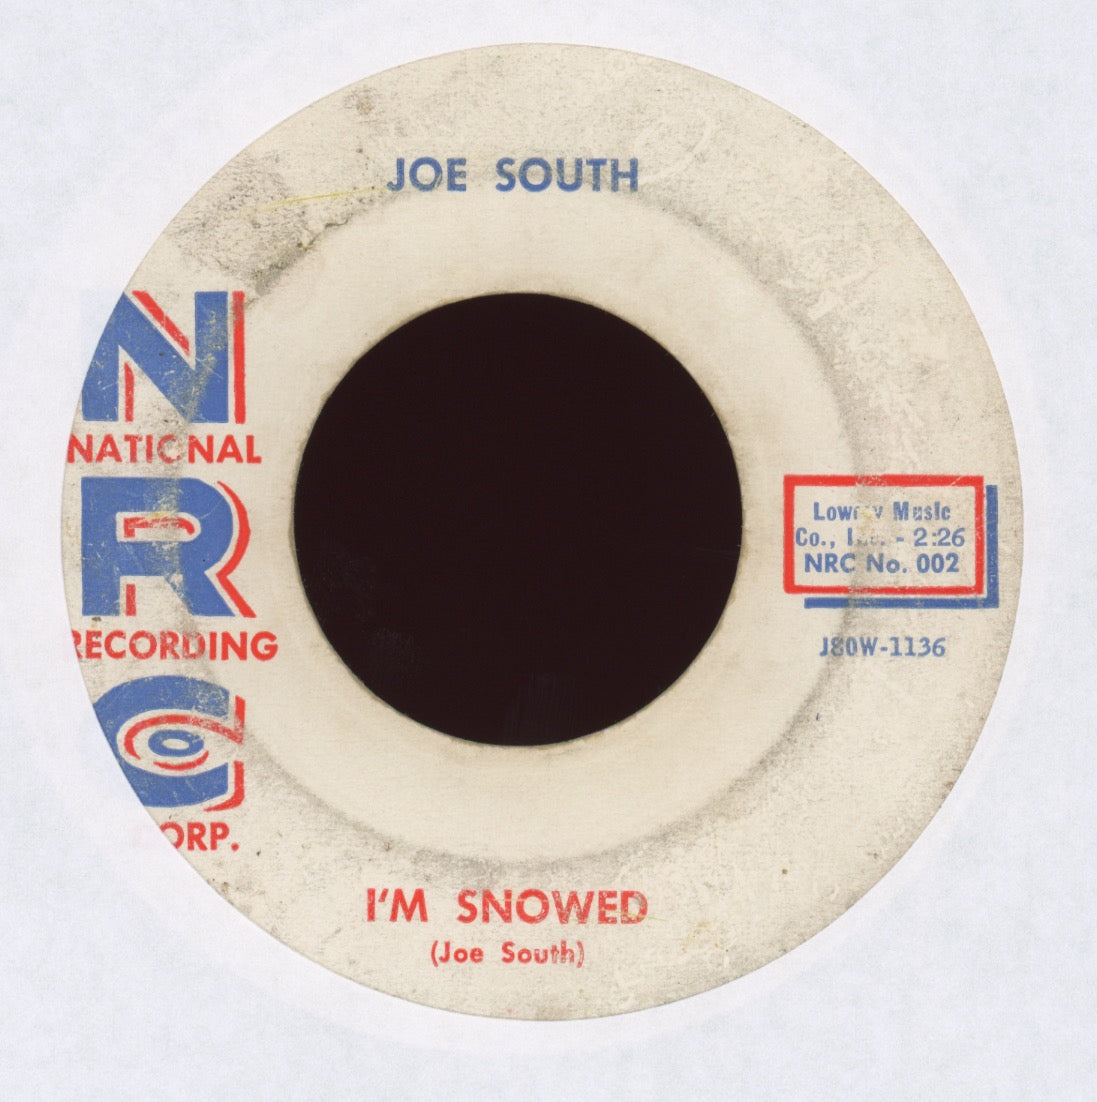 Joe South - I'm Snowed on NRC